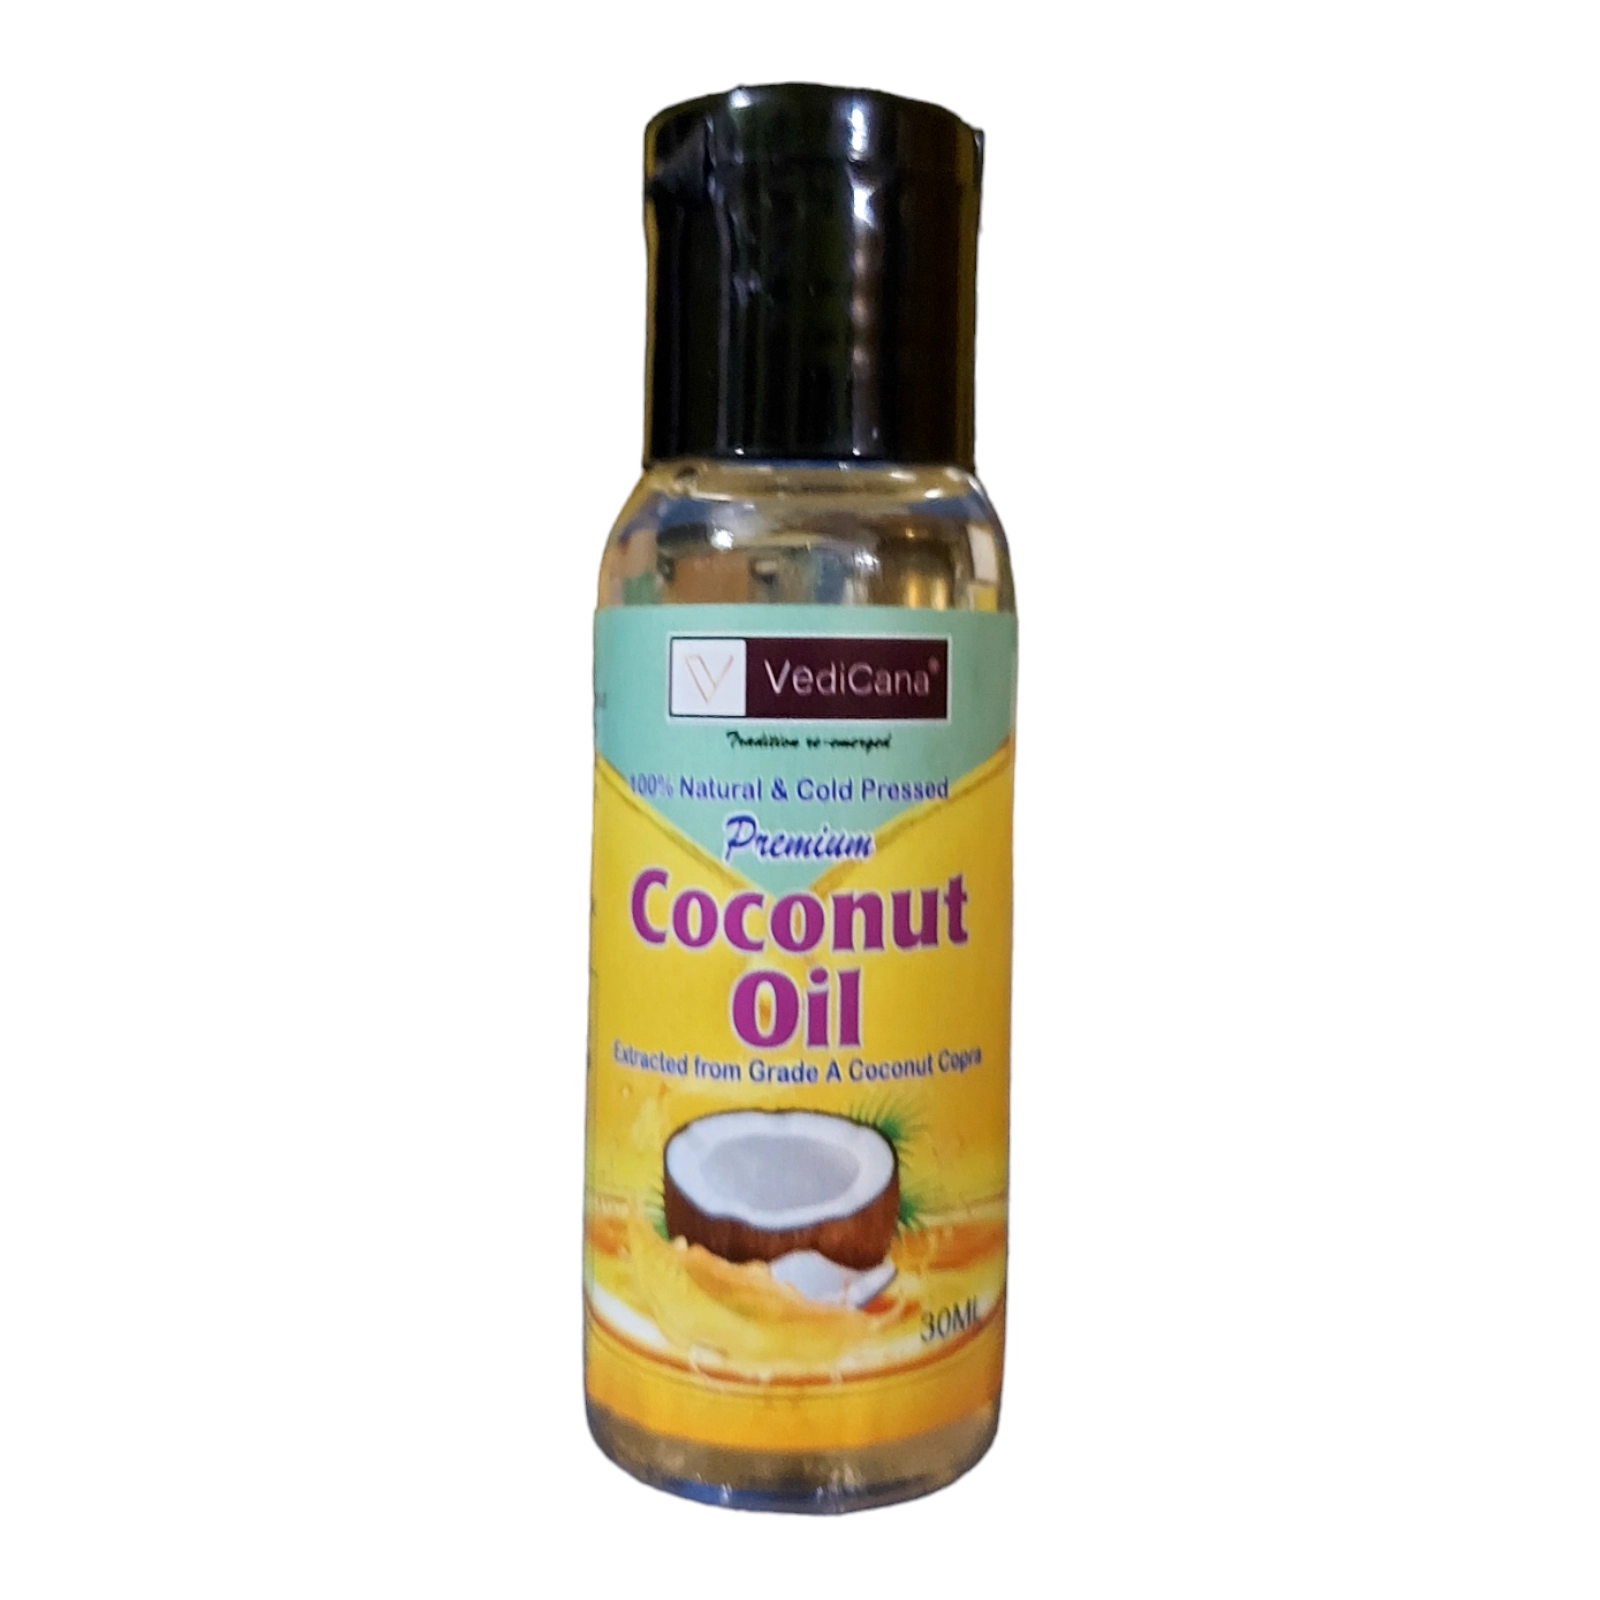 VediCana Coconut Oil